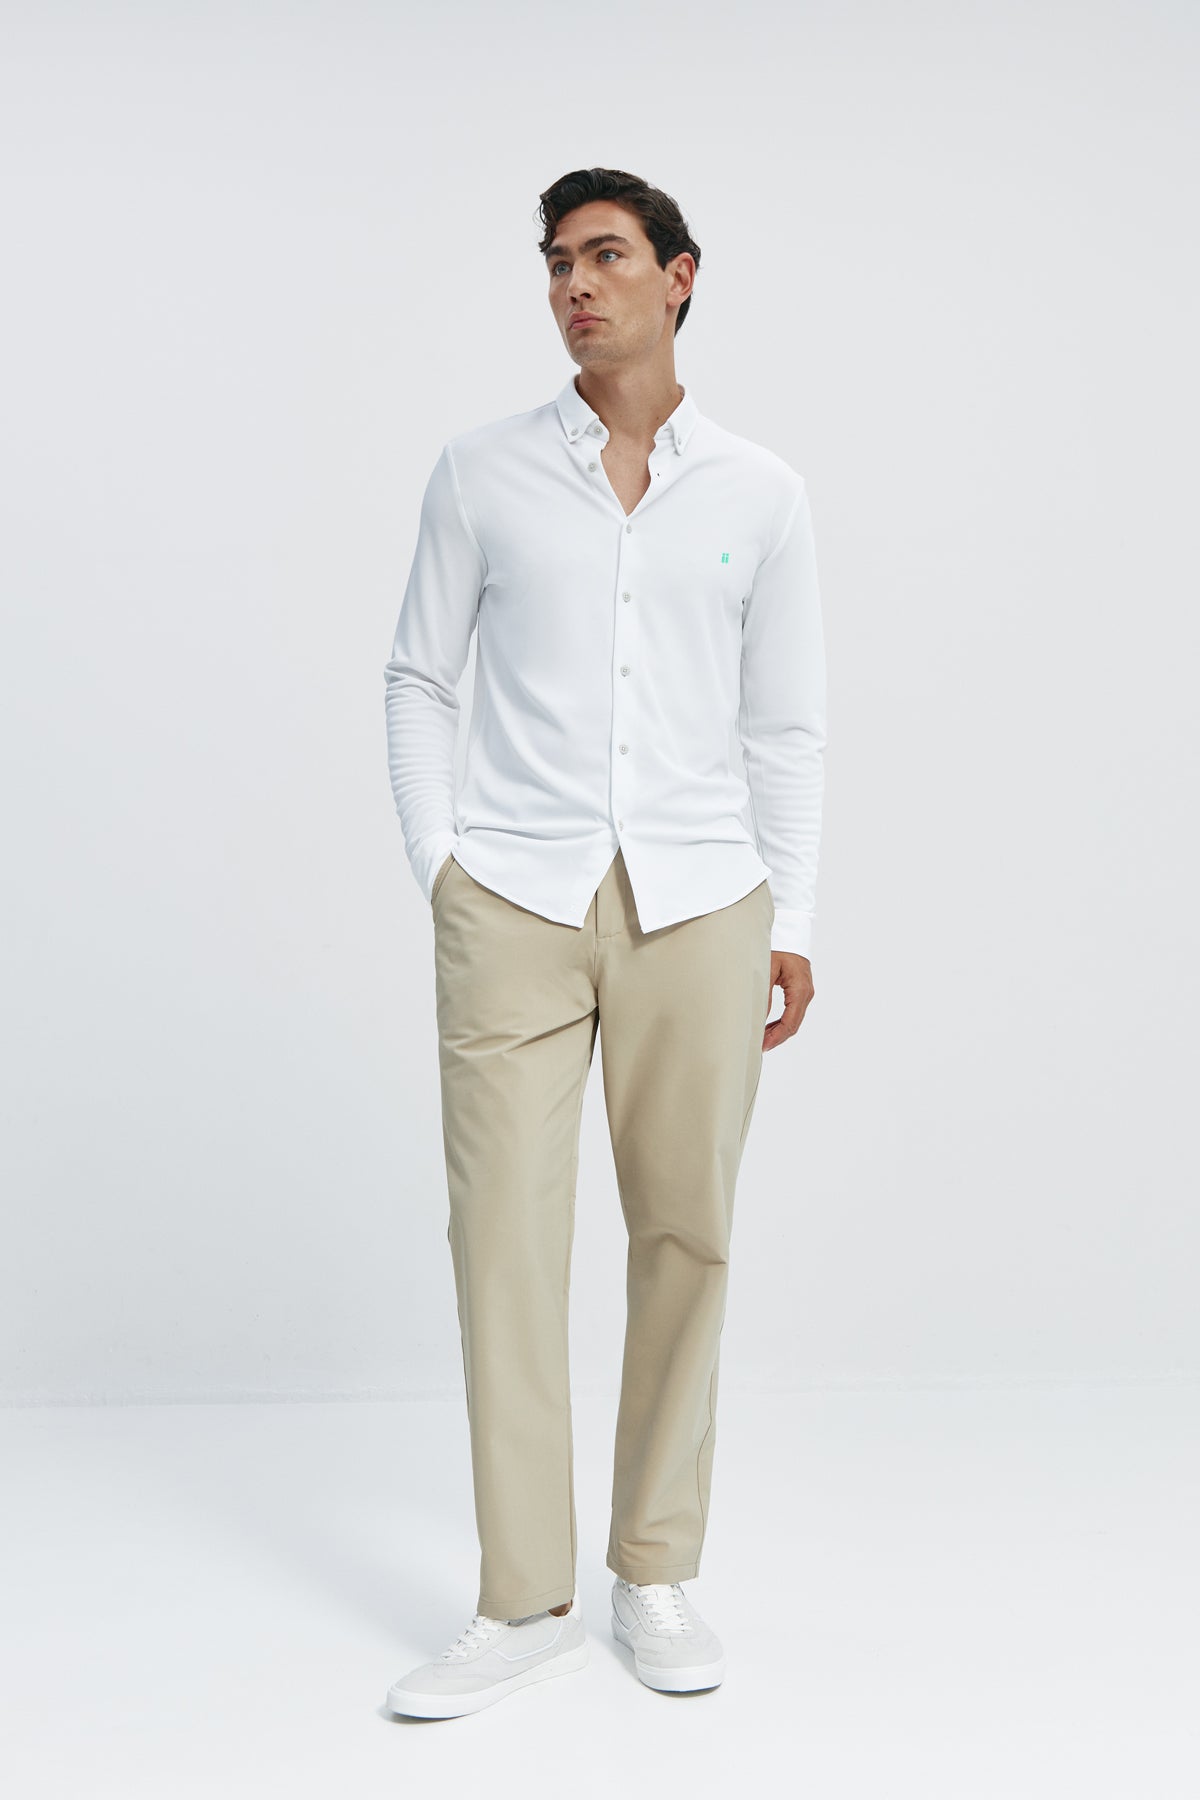 Camisa casual Blanco con logo para hombre sin arrugas ni manchas. Manga larga, antiarrugas y antimanchas. Foto cuerpo entero